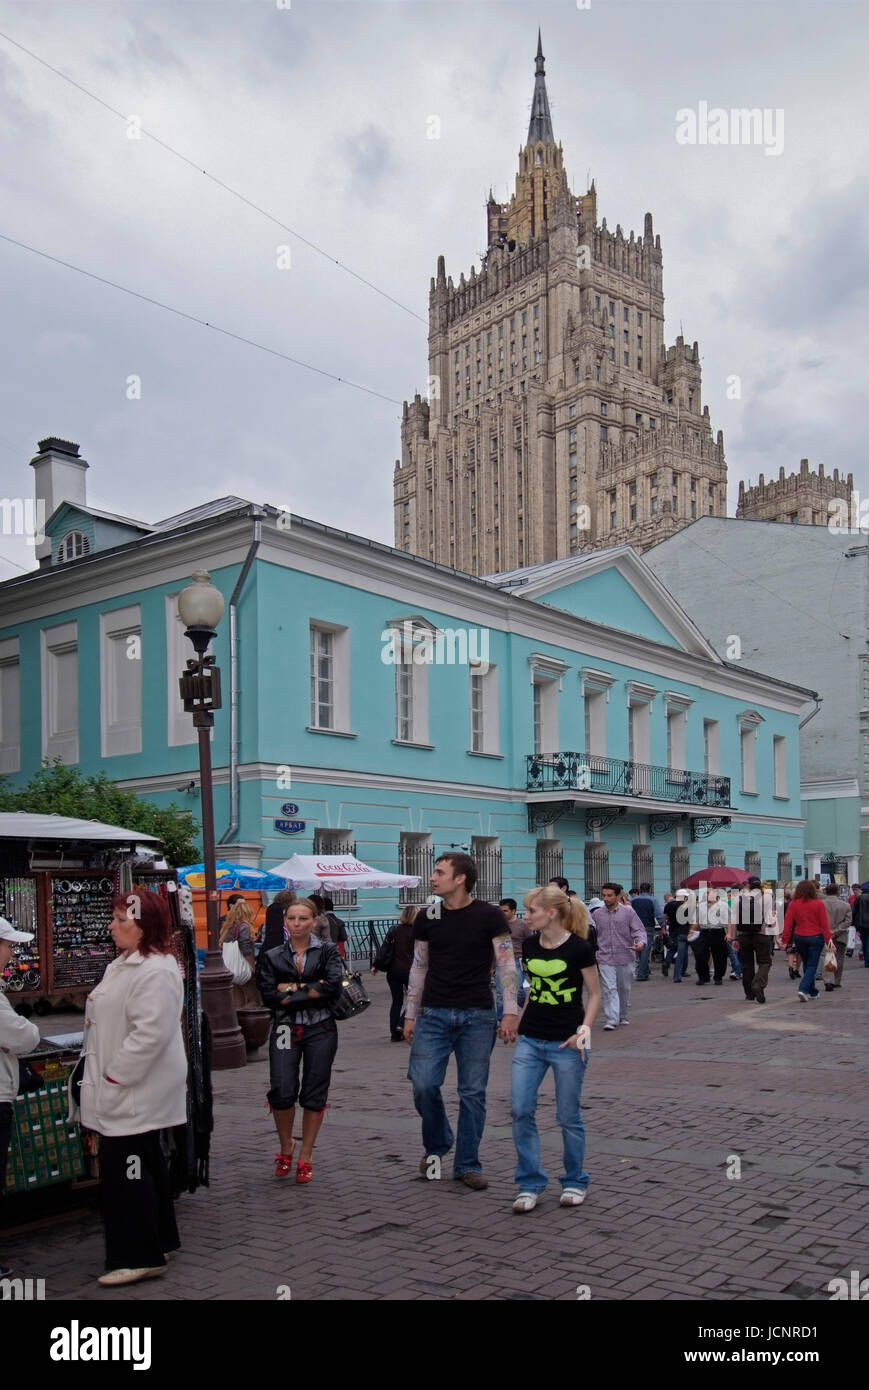 Arbat street, strada pedonale con souvenir come il russo matriosche o insegne militari dell'esercito russo, artista di strada, musicisti, cantanti, Foto Stock